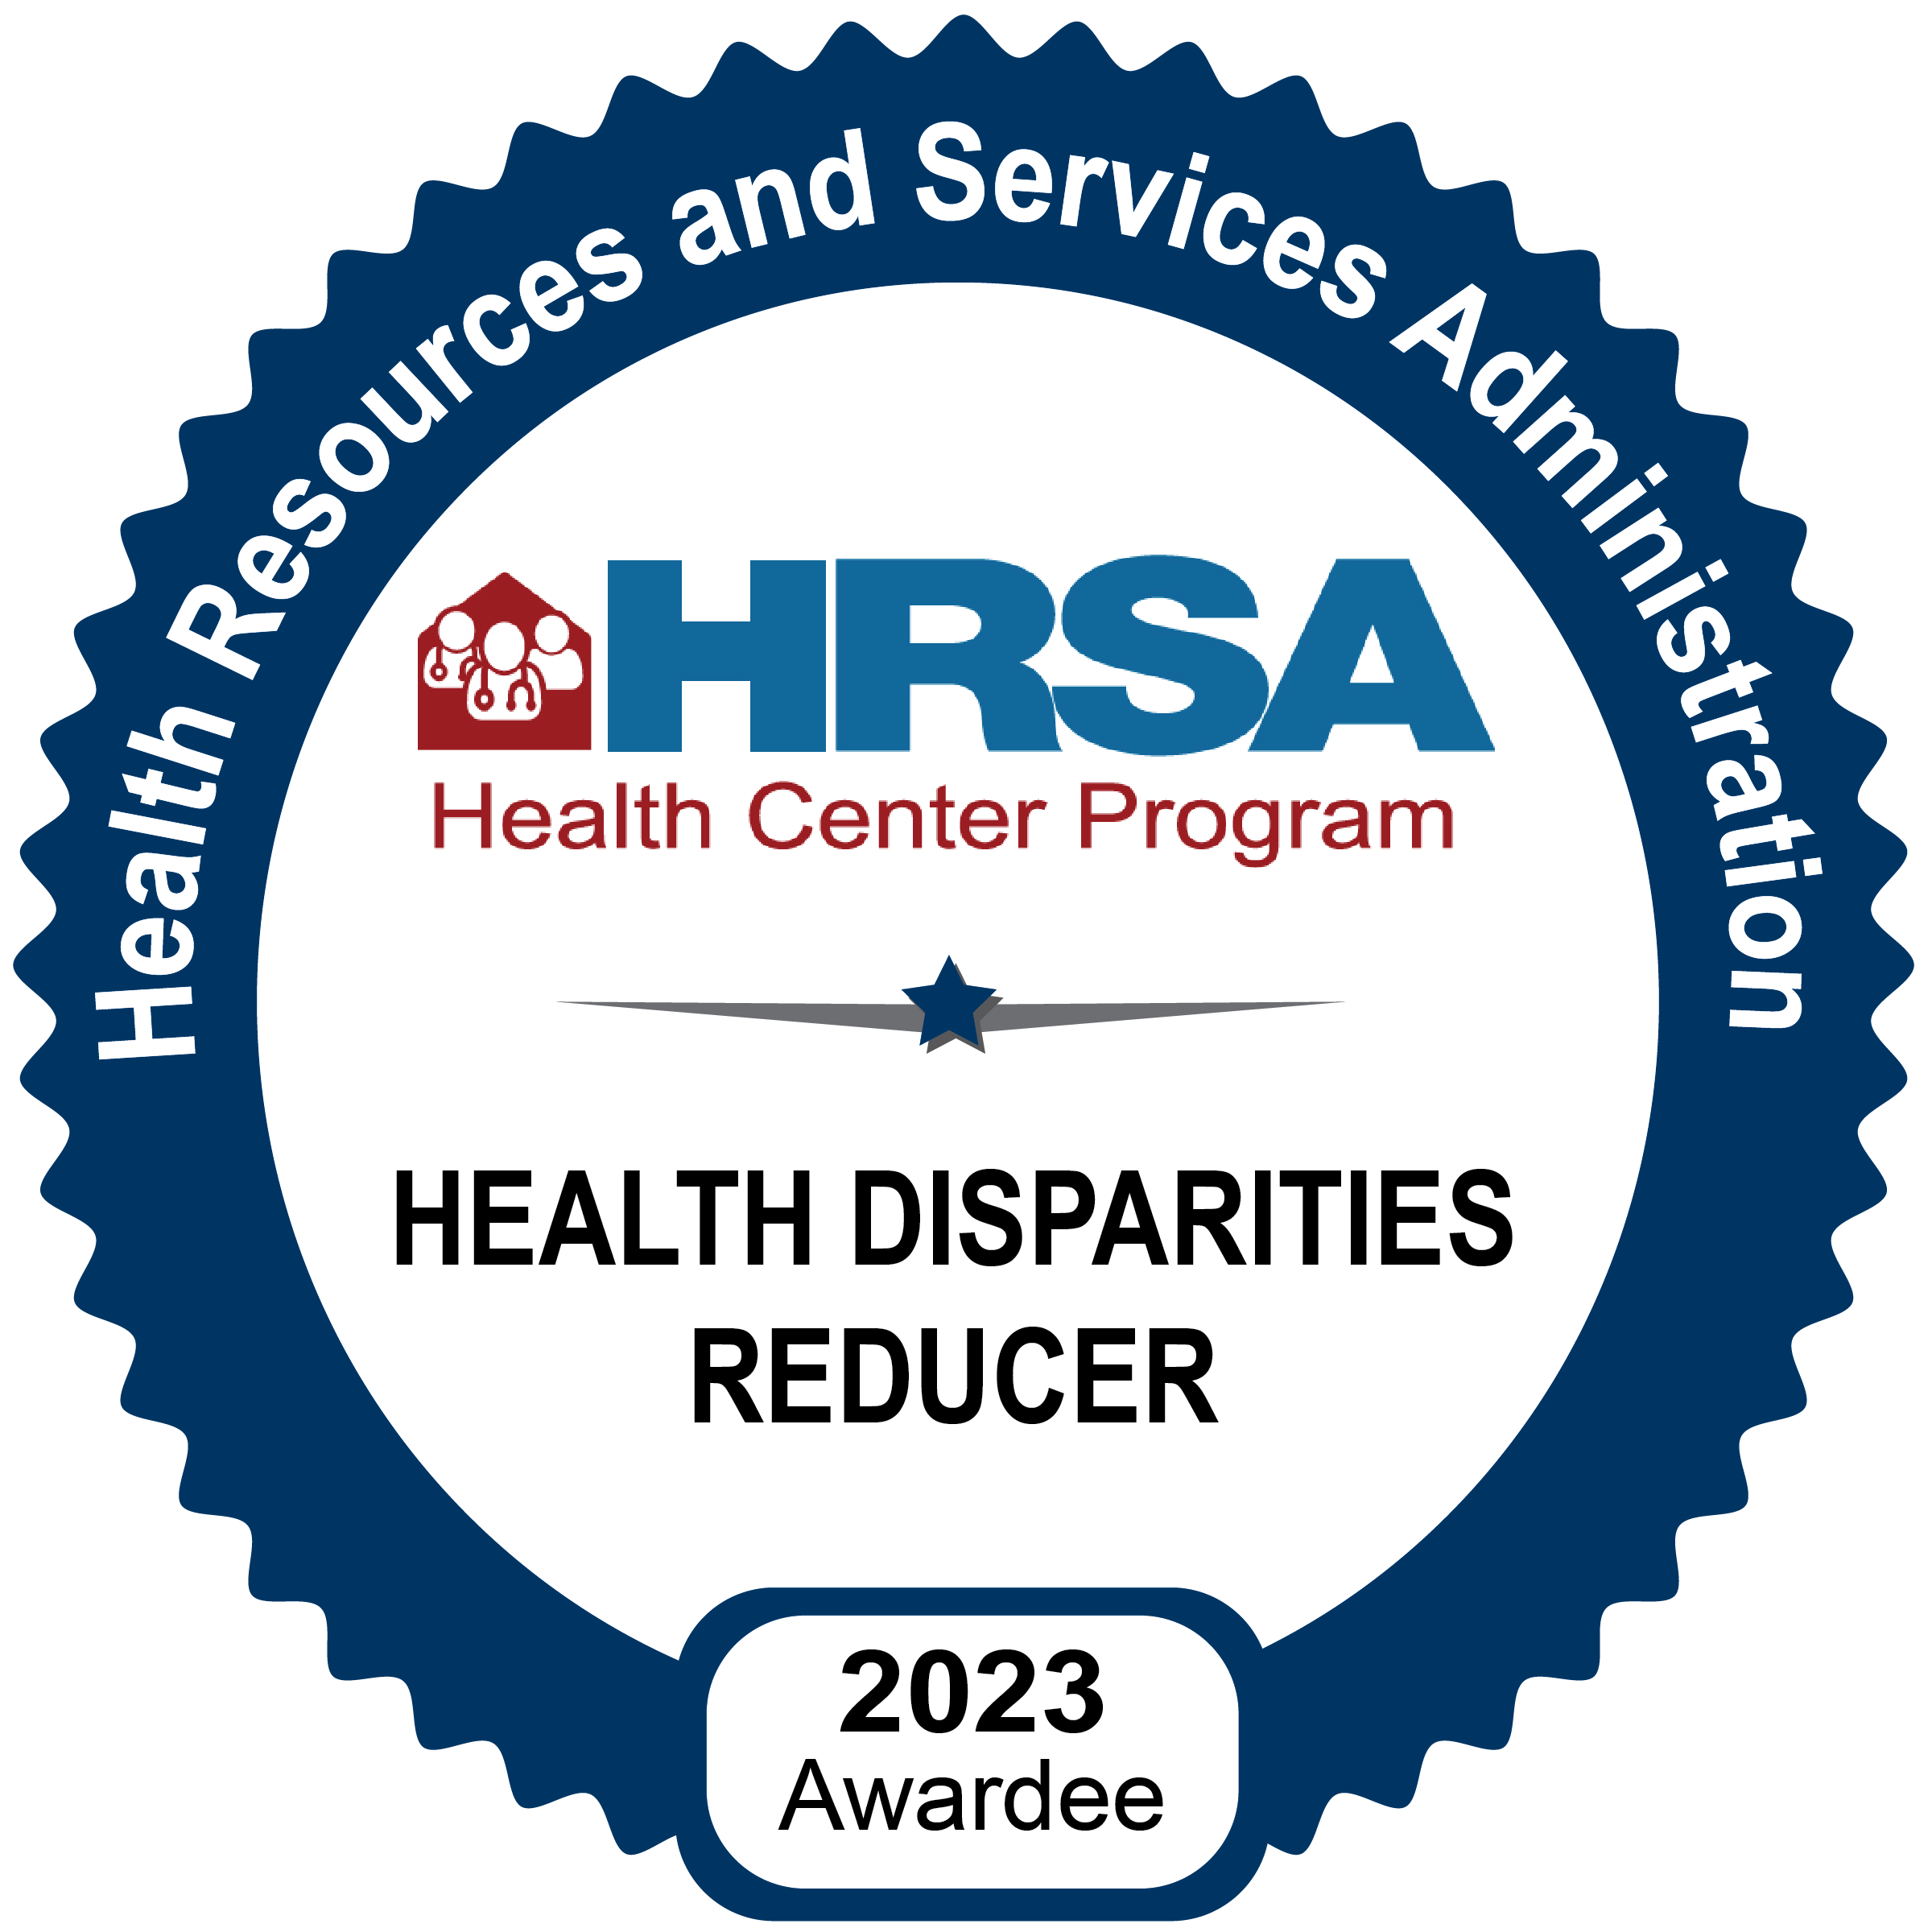 HRSA Health Disparities Reducer 2023